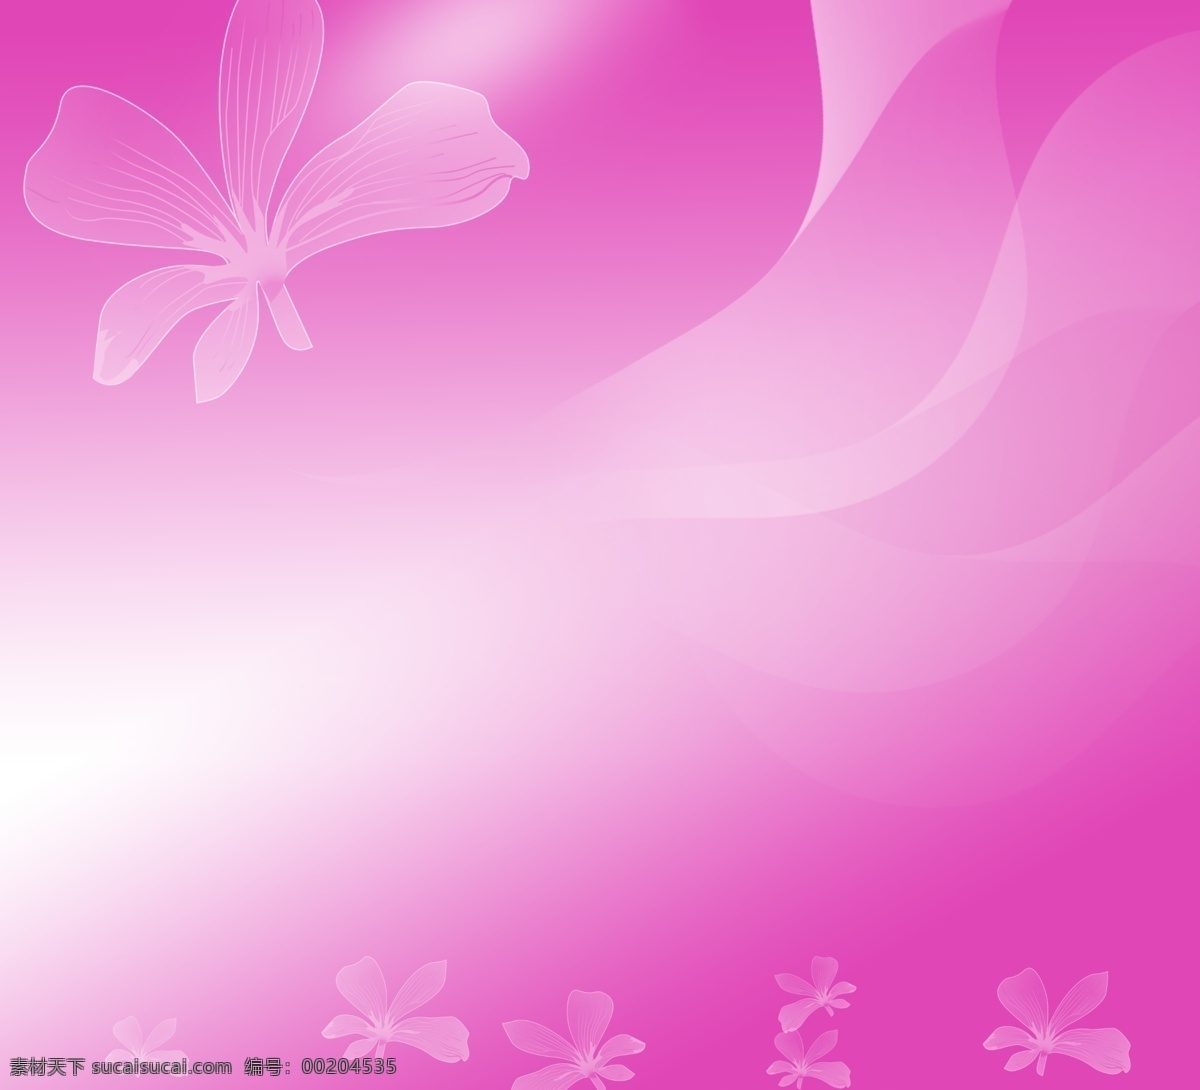 紫色 梦幻 照片 模版 粉色渐变背景 梦幻白色花朵 曲线 元素组合 背景素材 分层 源文件